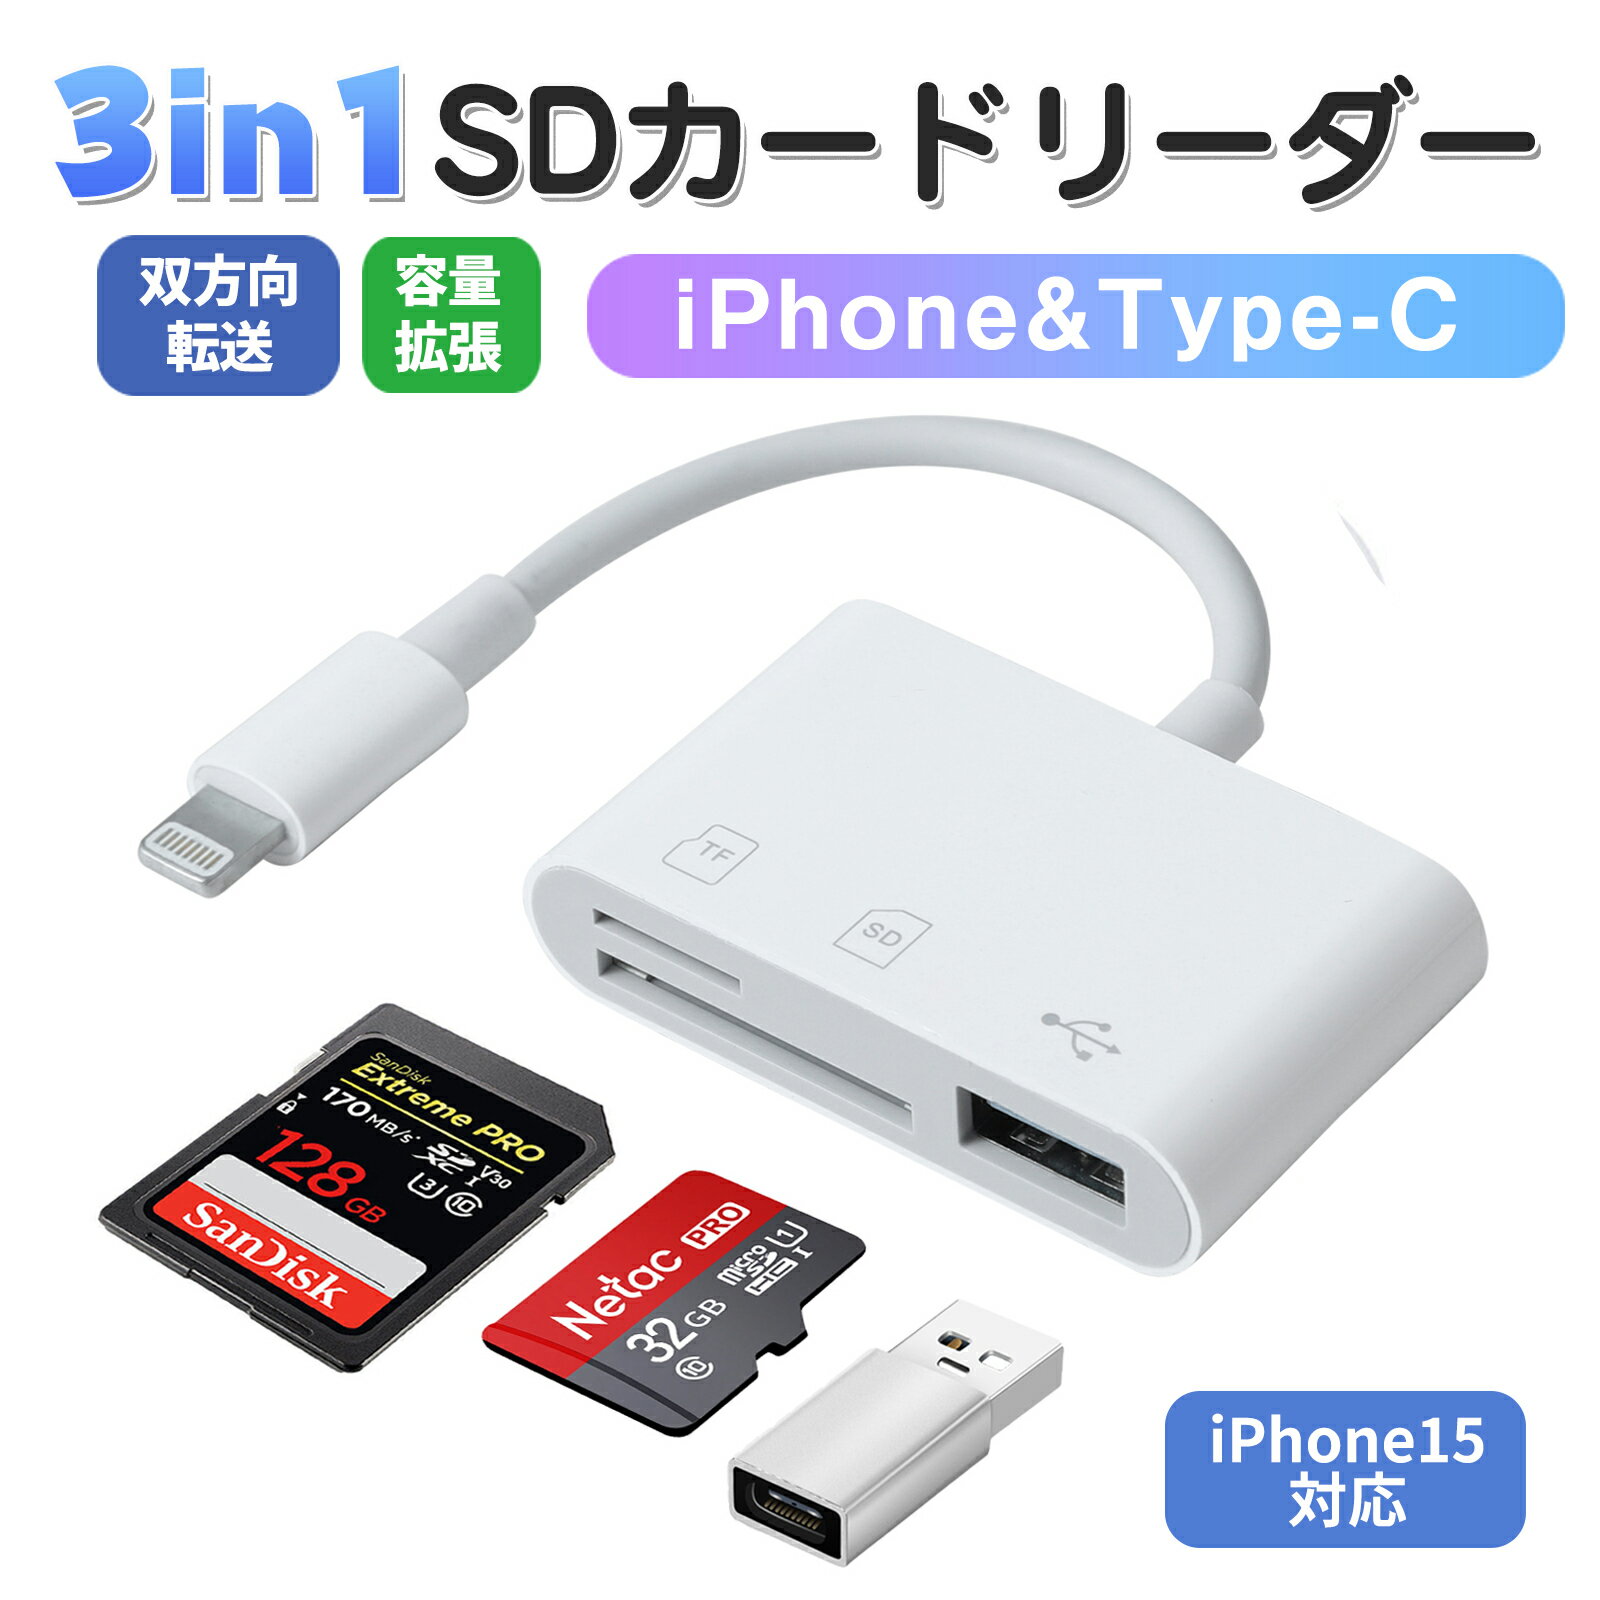 N/B USBカードリーダー SEG-1022(シルバー) HK-2003[カードリーダー][定形外郵便、送料無料、代引不可]